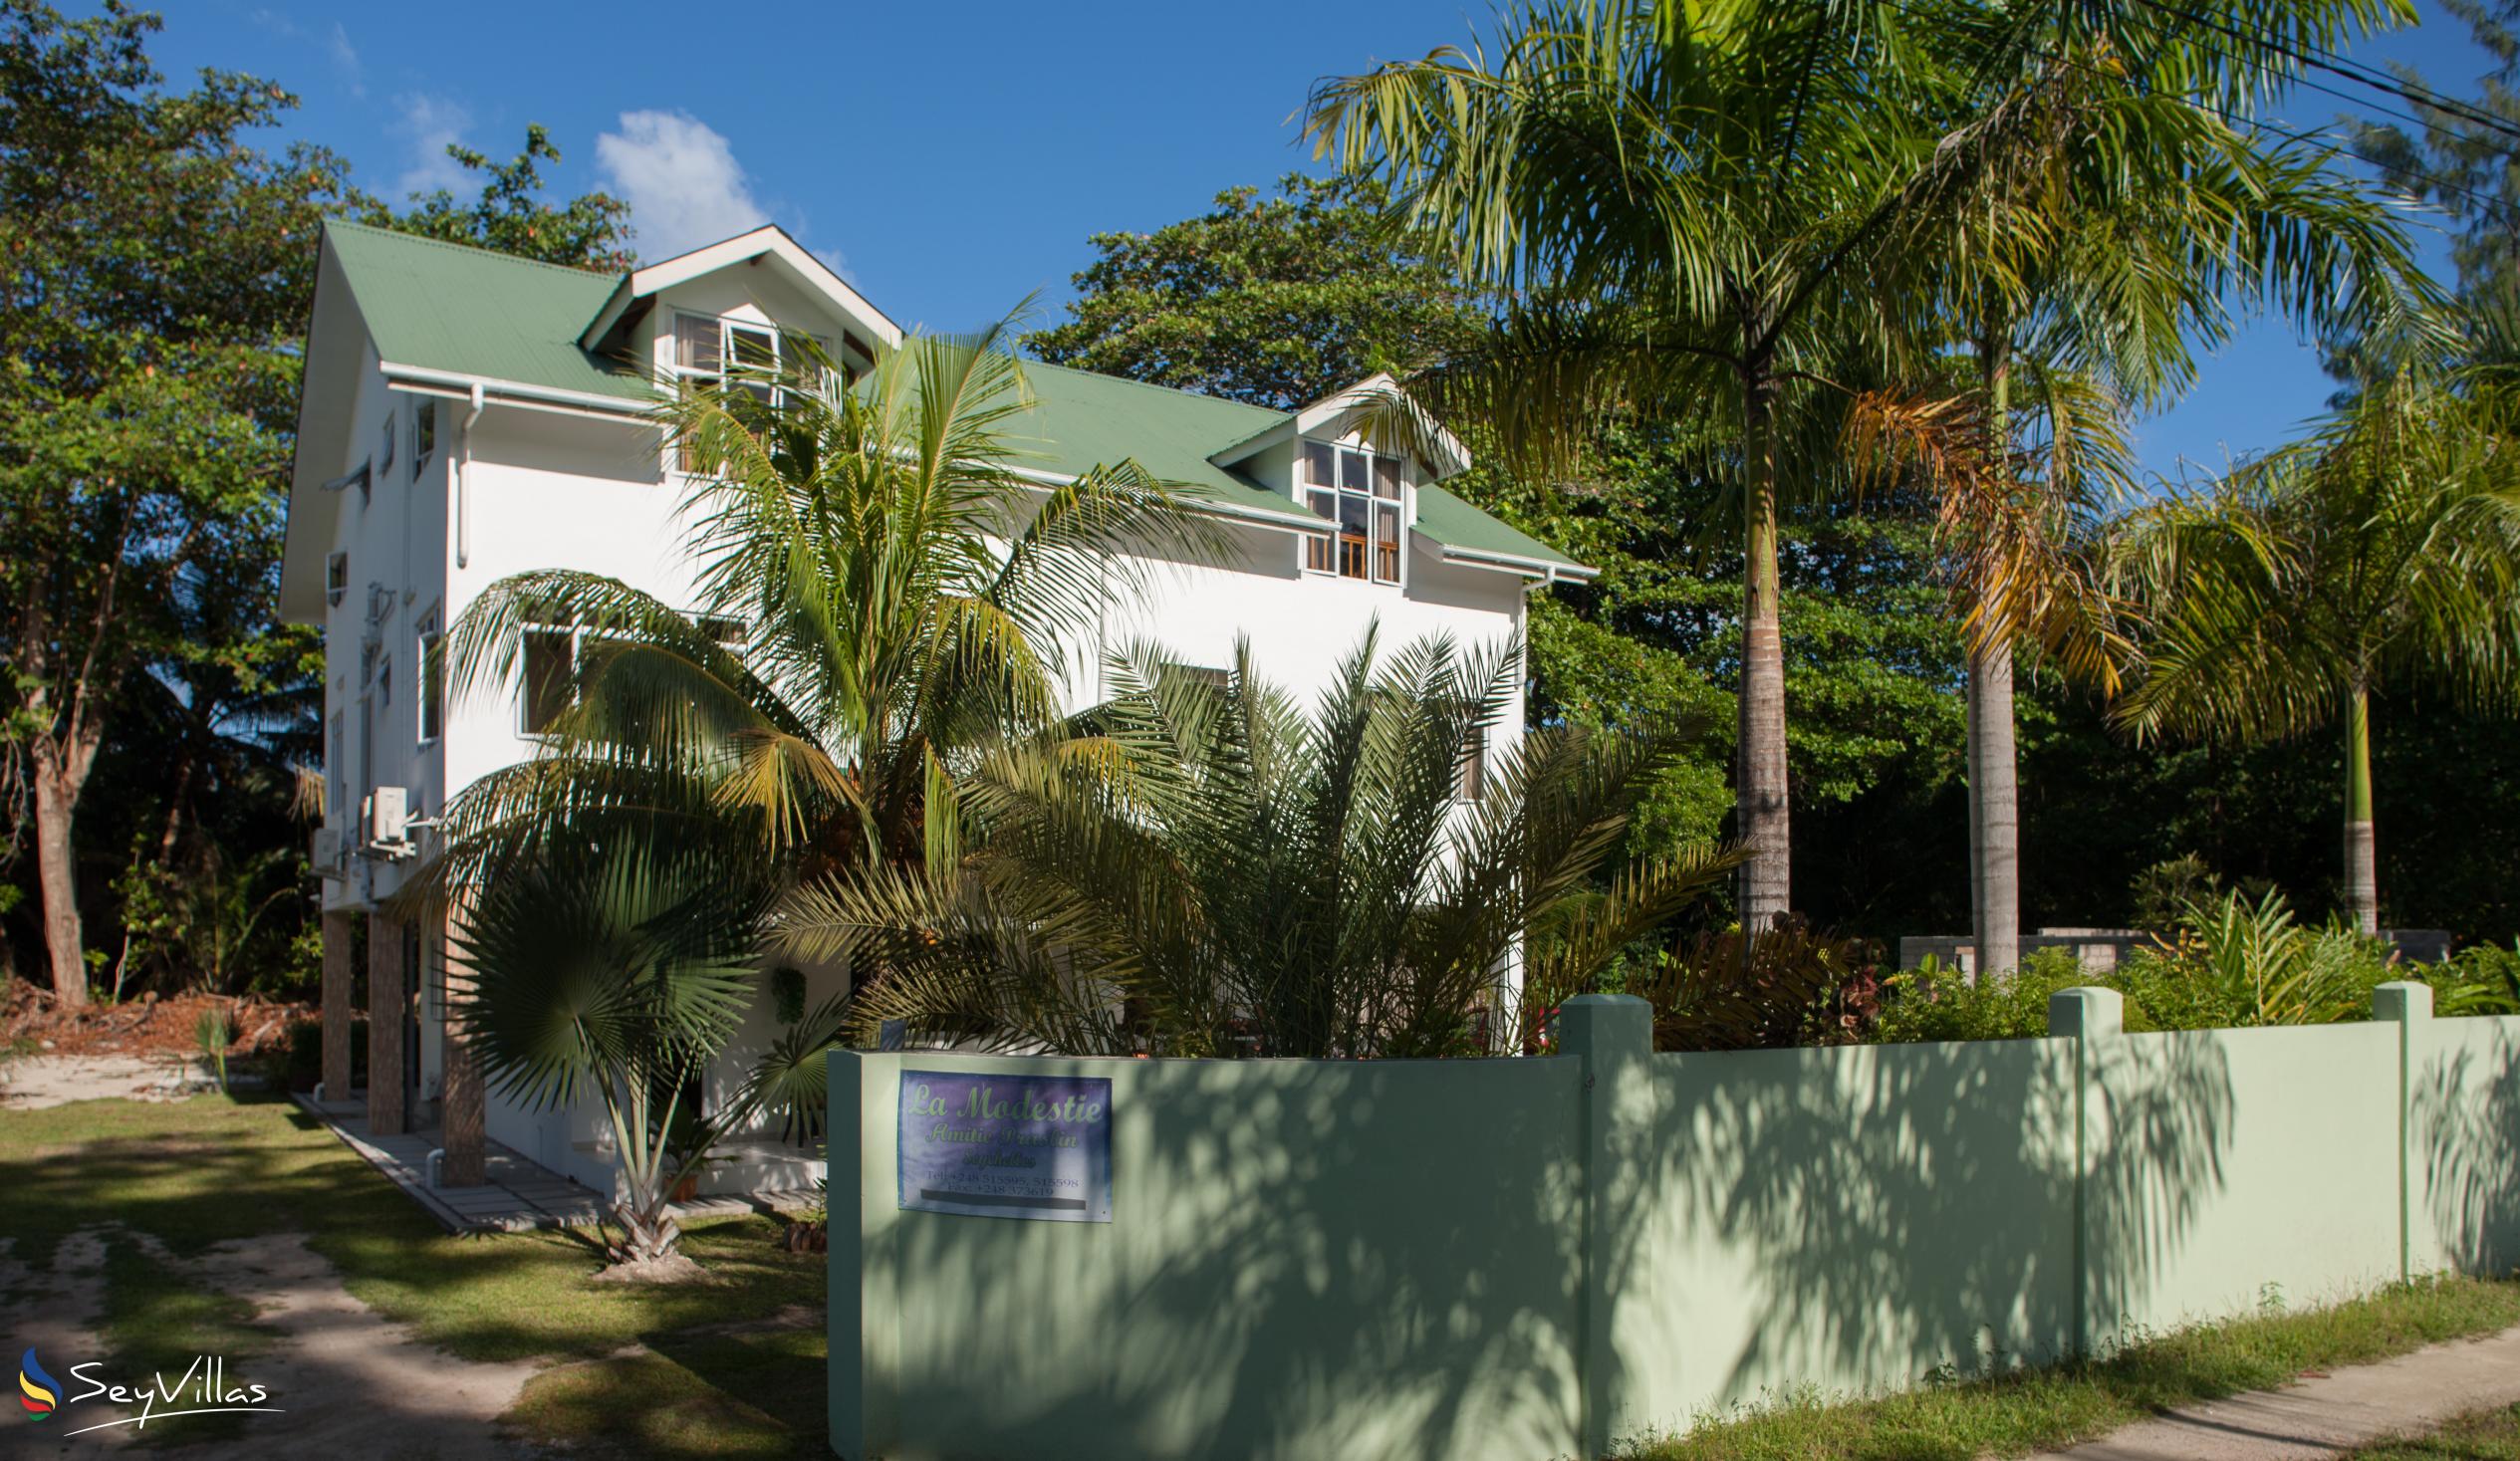 Foto 7: La Modestie Villa - Aussenbereich - Praslin (Seychellen)